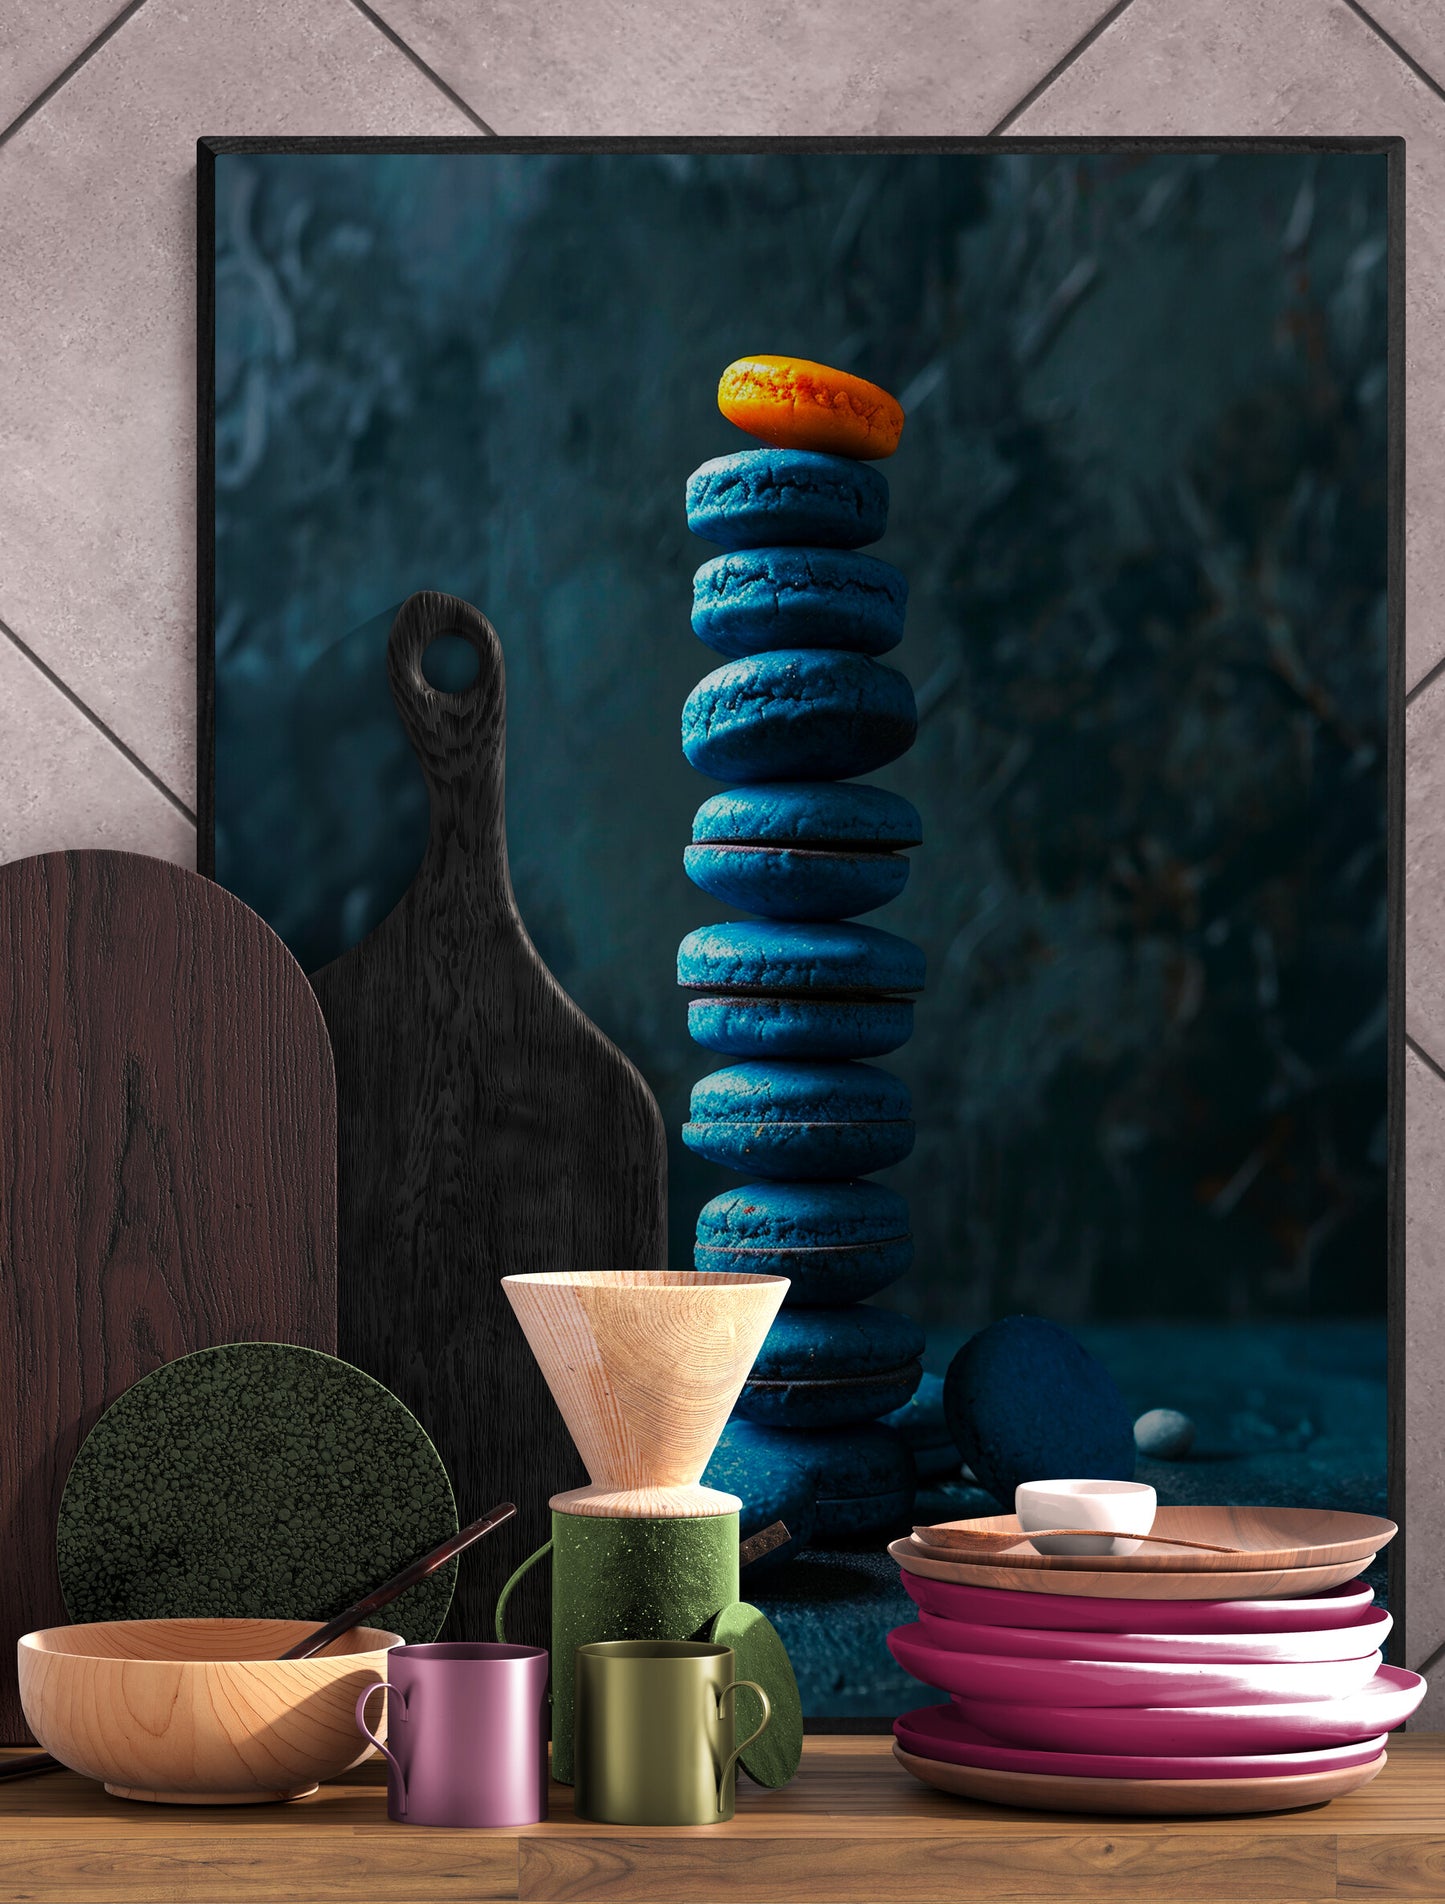 Cuisine moderne avec tableau de macarons colorés et ustensiles en bois.